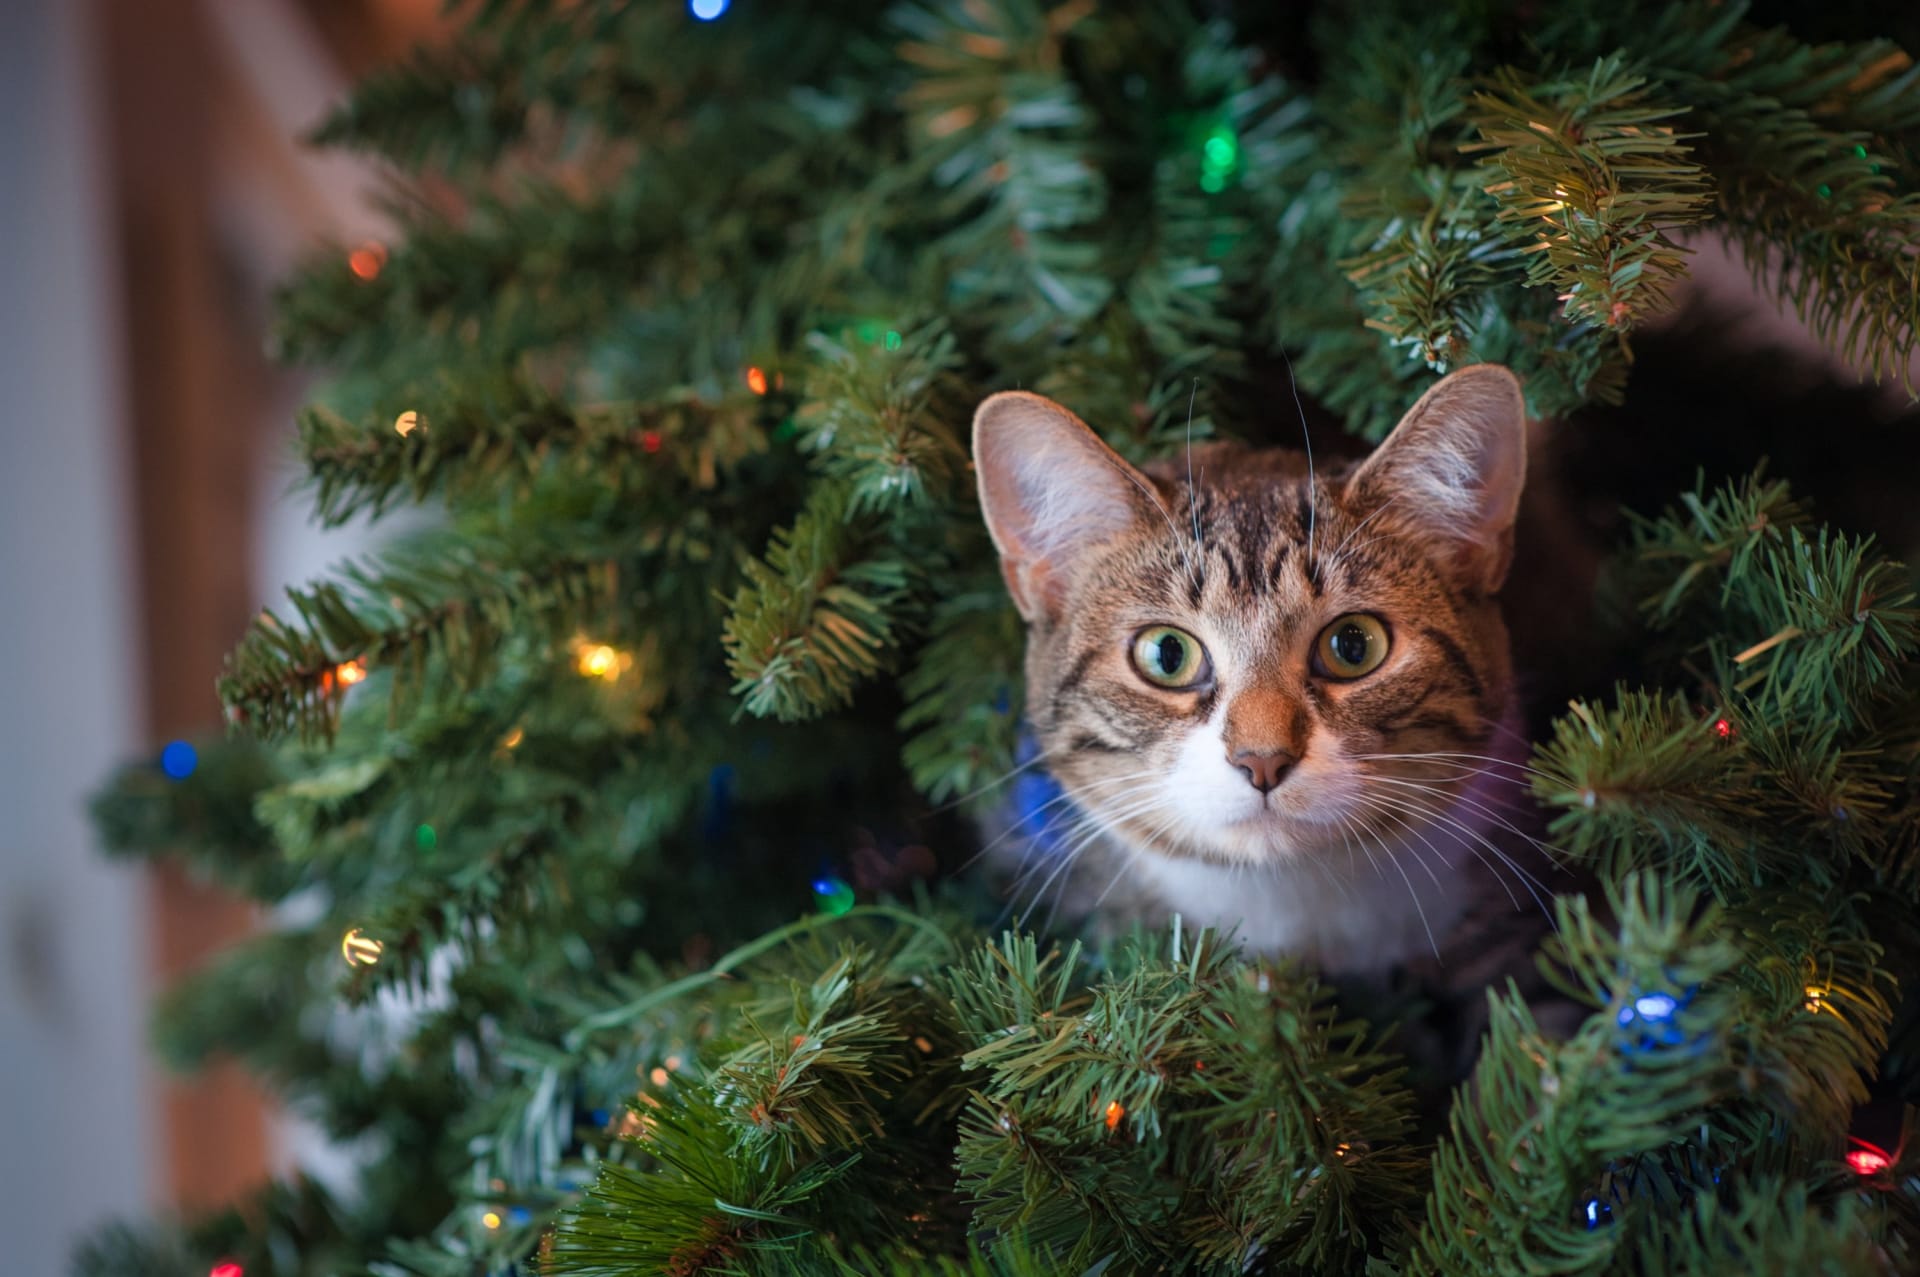 Vánoční stromeček je pro zvířata díky barvám a světýlkům velkým lákadlem